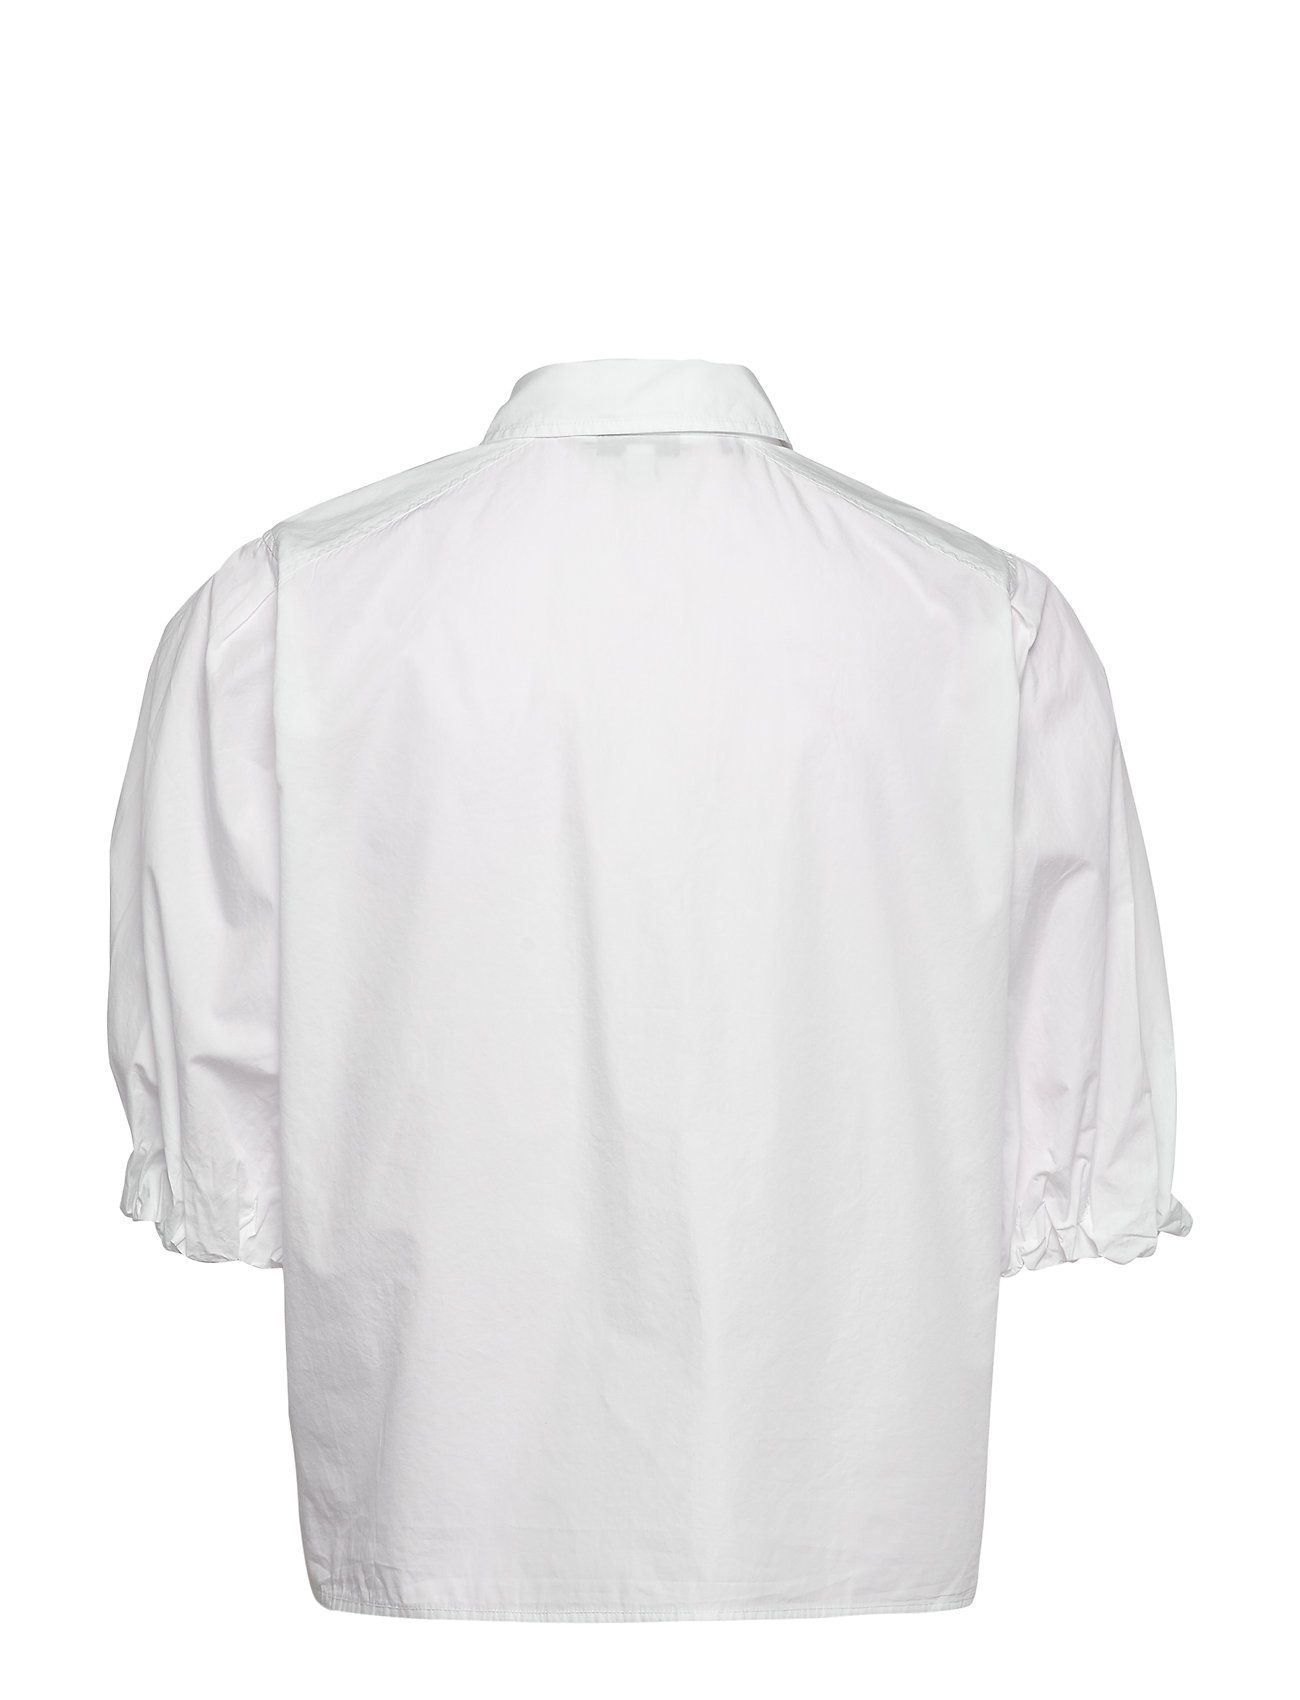 over Sump køleskab Sanni Shirt Ss Kortærmet Skjorte Hvid Tommy Hilfiger kortærmede skjorter  fra Tommy Hilfiger til dame i TH OPTIC WHITE - Pashion.dk